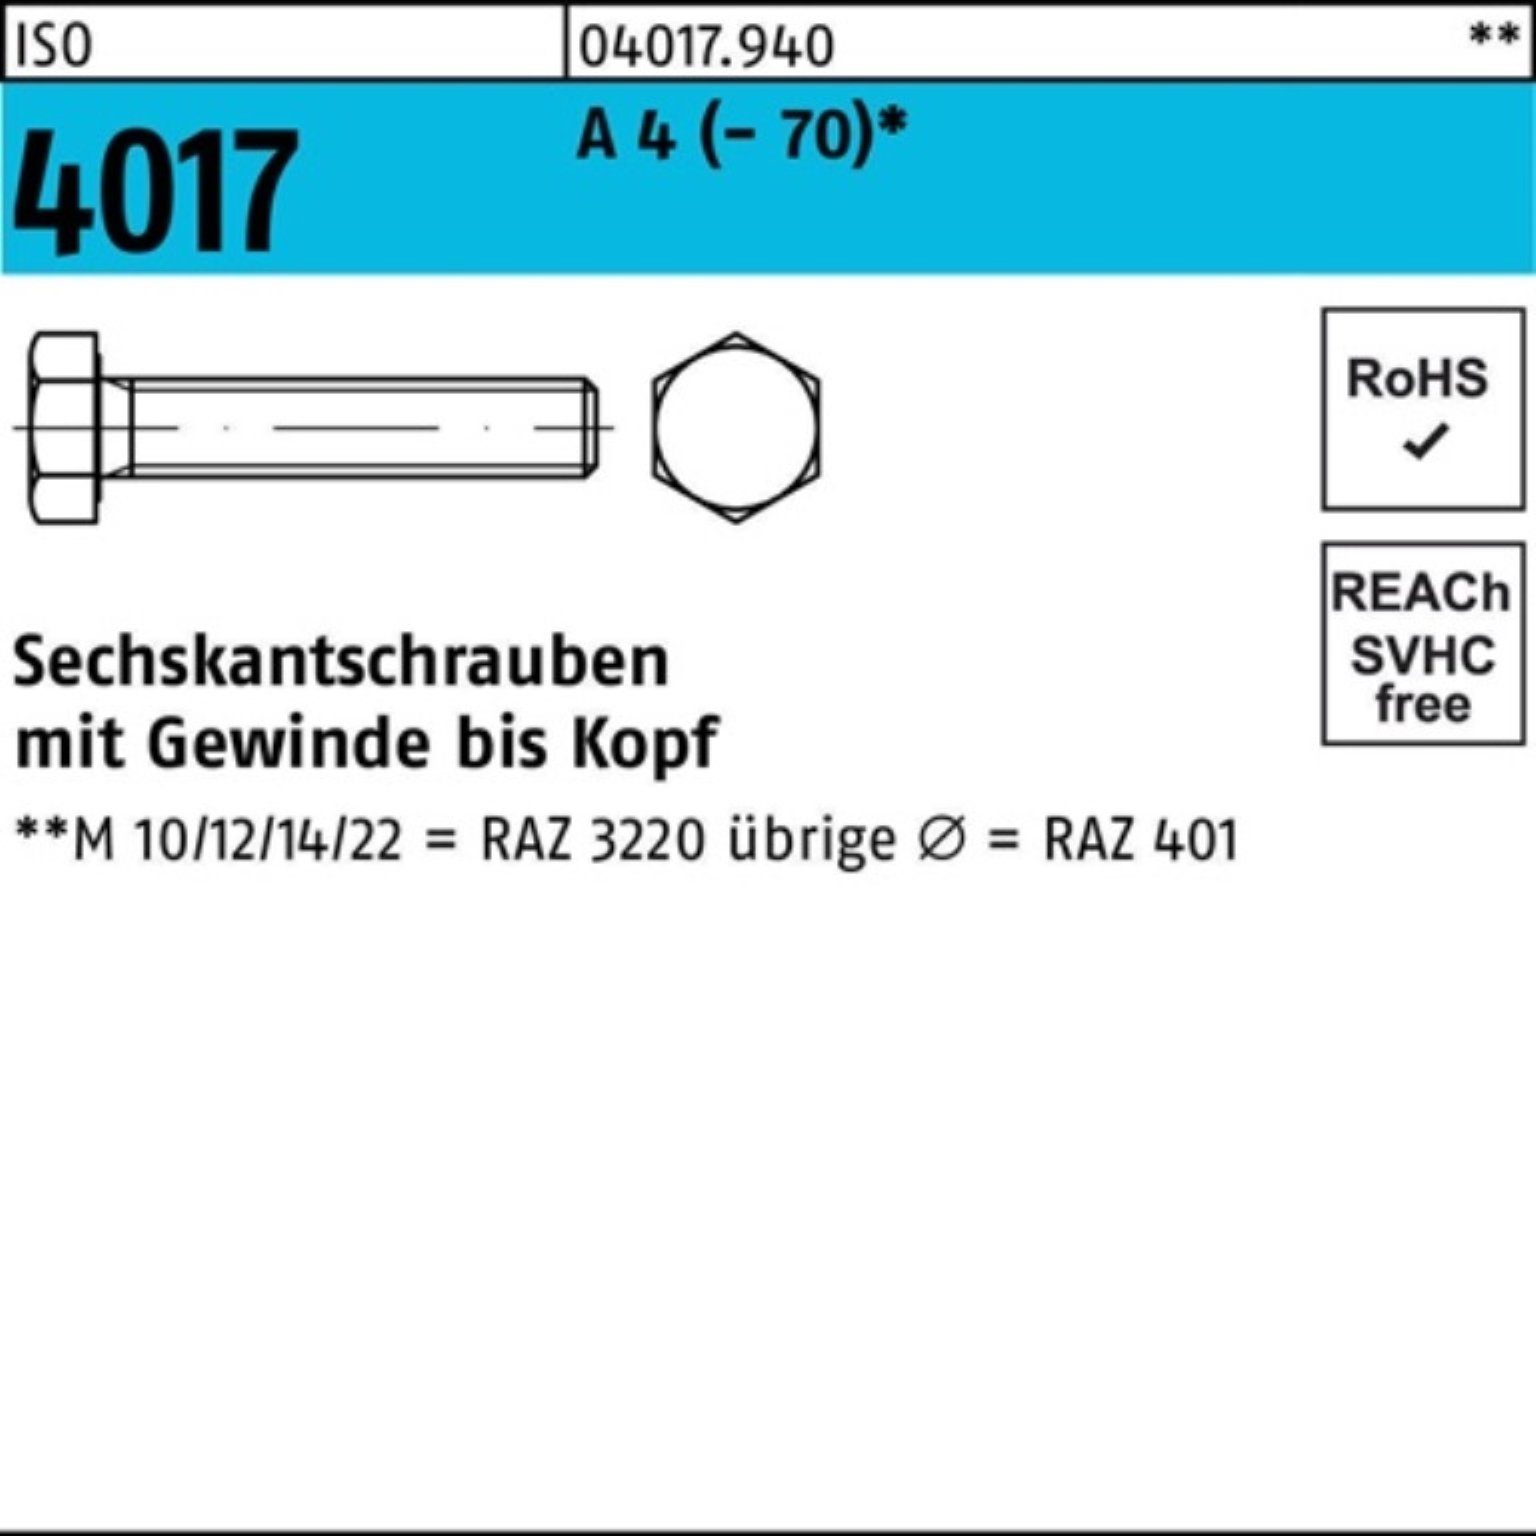 Bufab Sechskantschraube 100er Pack Sechskantschraube ISO 4017 VG M22x 45 A 4 (70) 1 Stück I